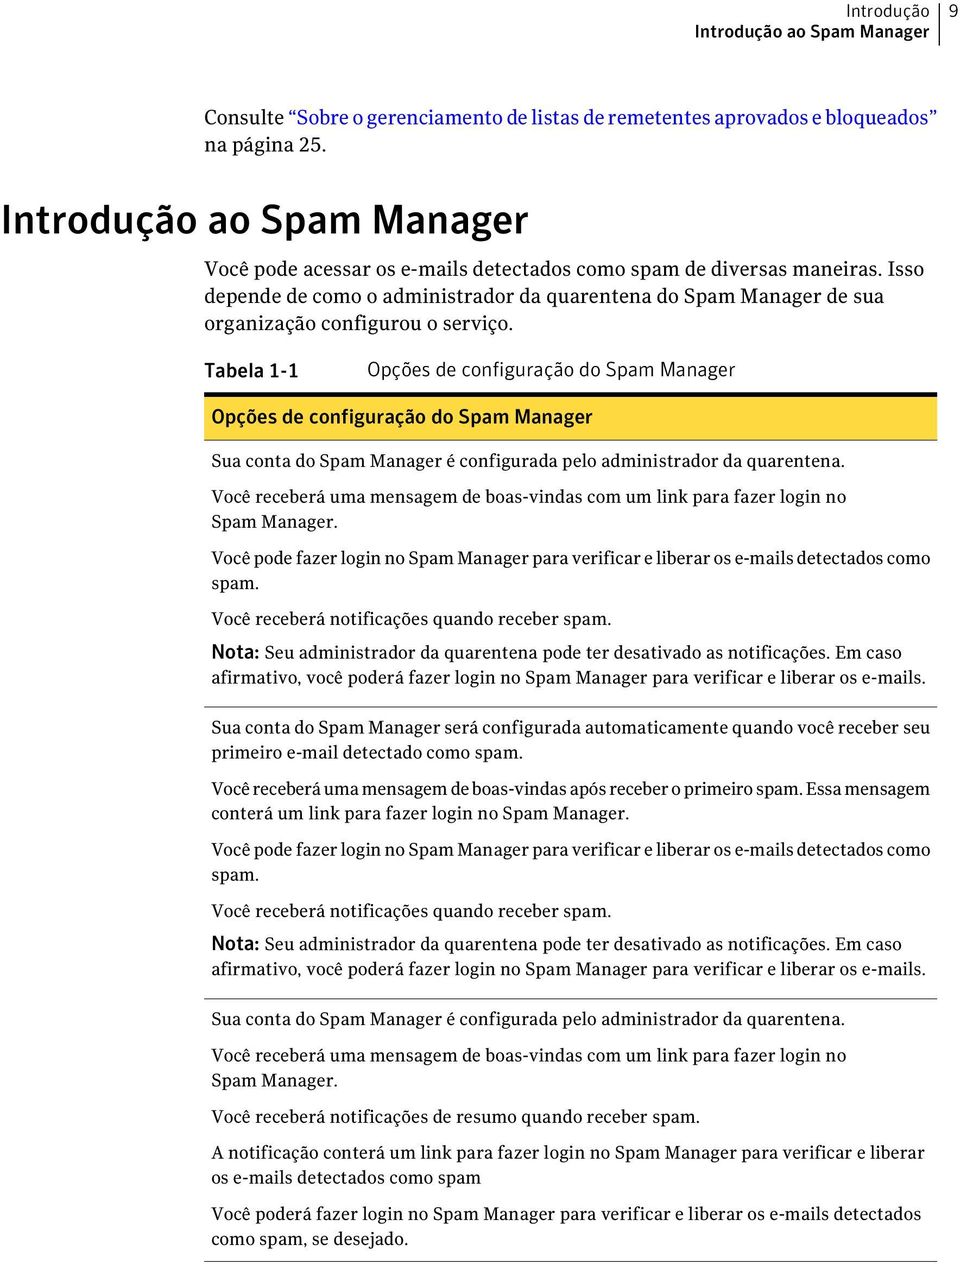 Isso depende de como o administrador da quarentena do Spam Manager de sua organização configurou o serviço.